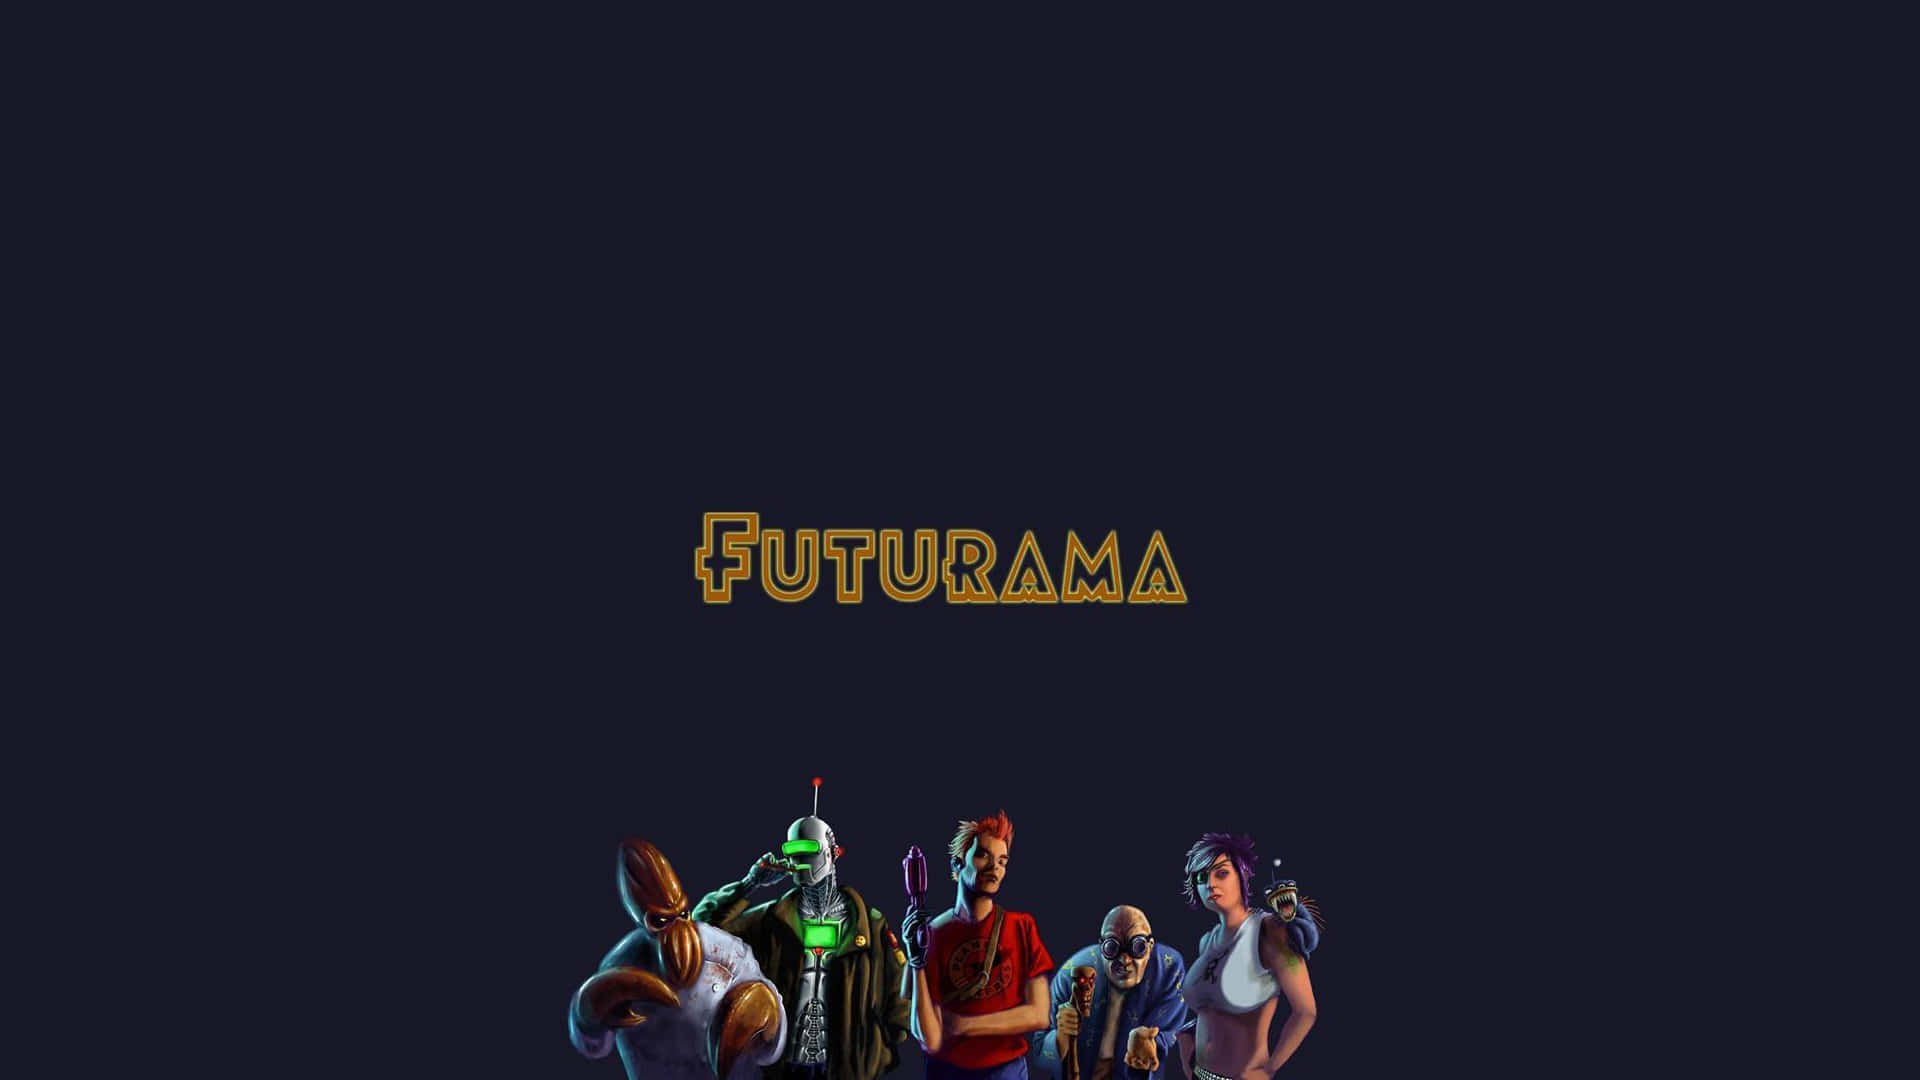 Futurama crew in space